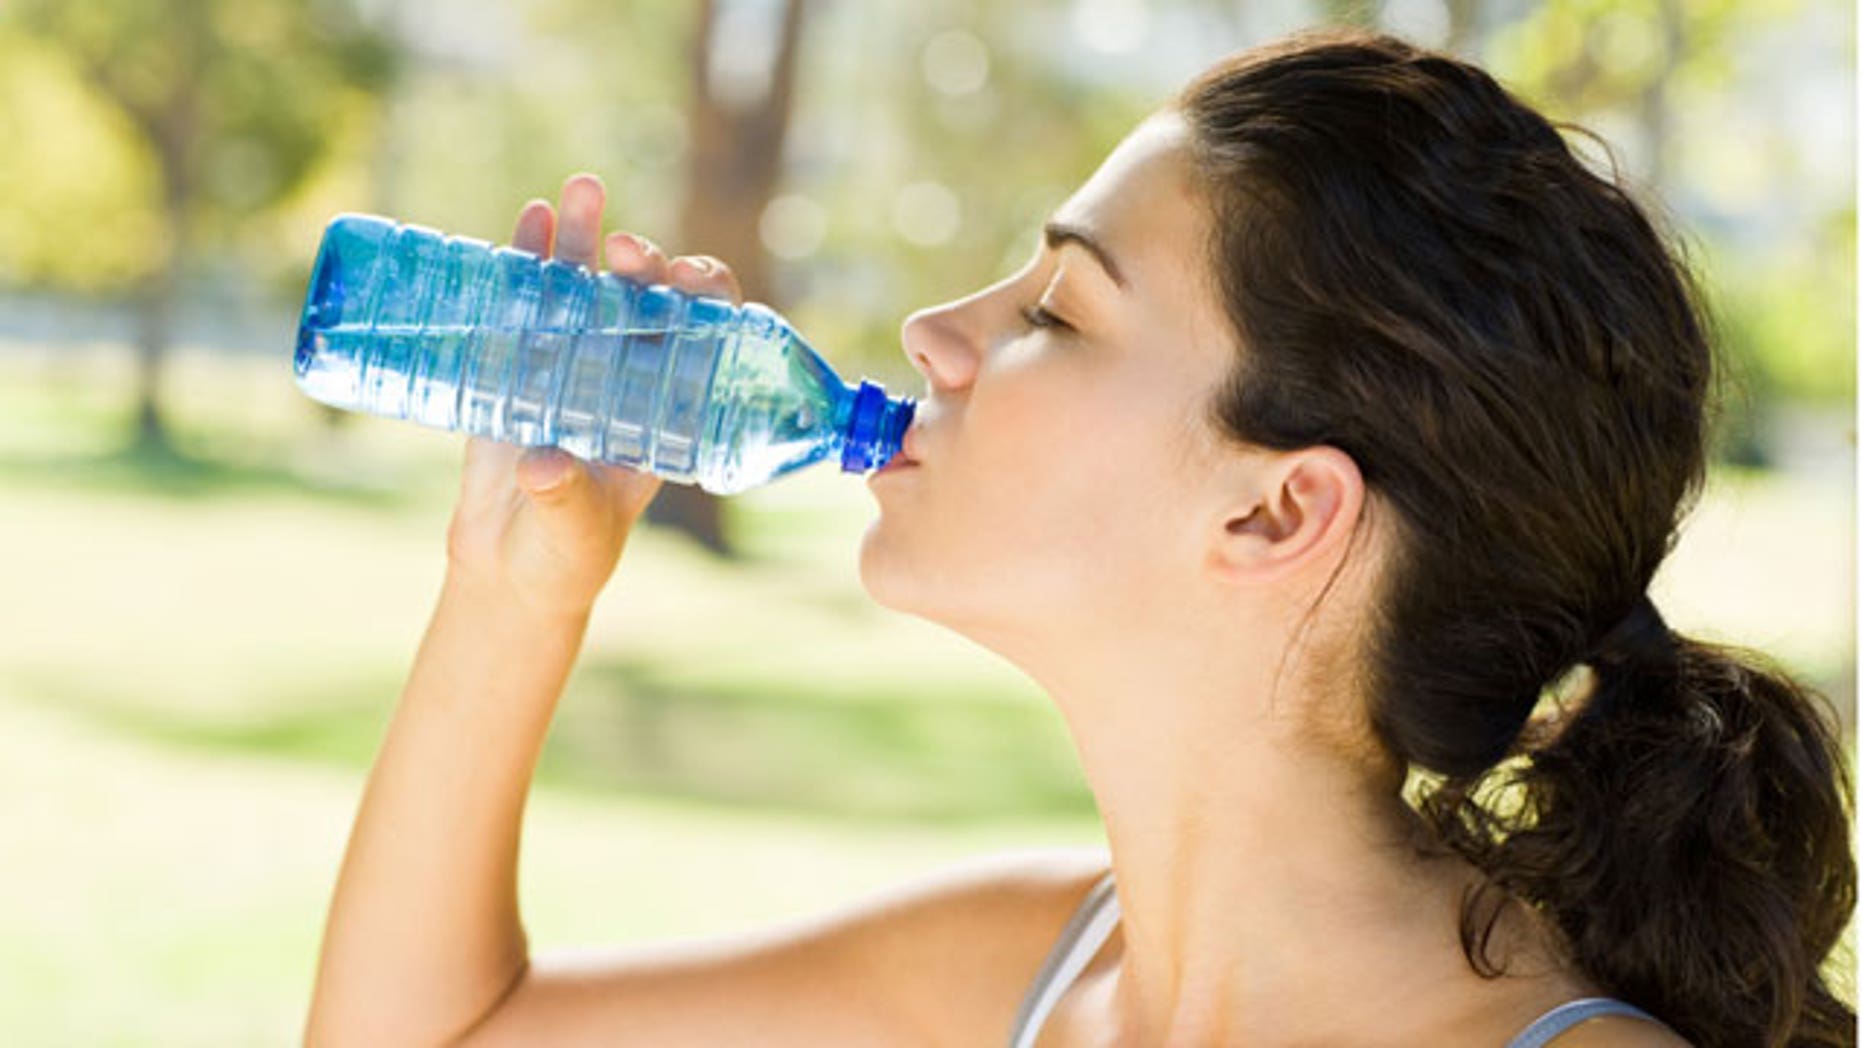 should we drink bottled water